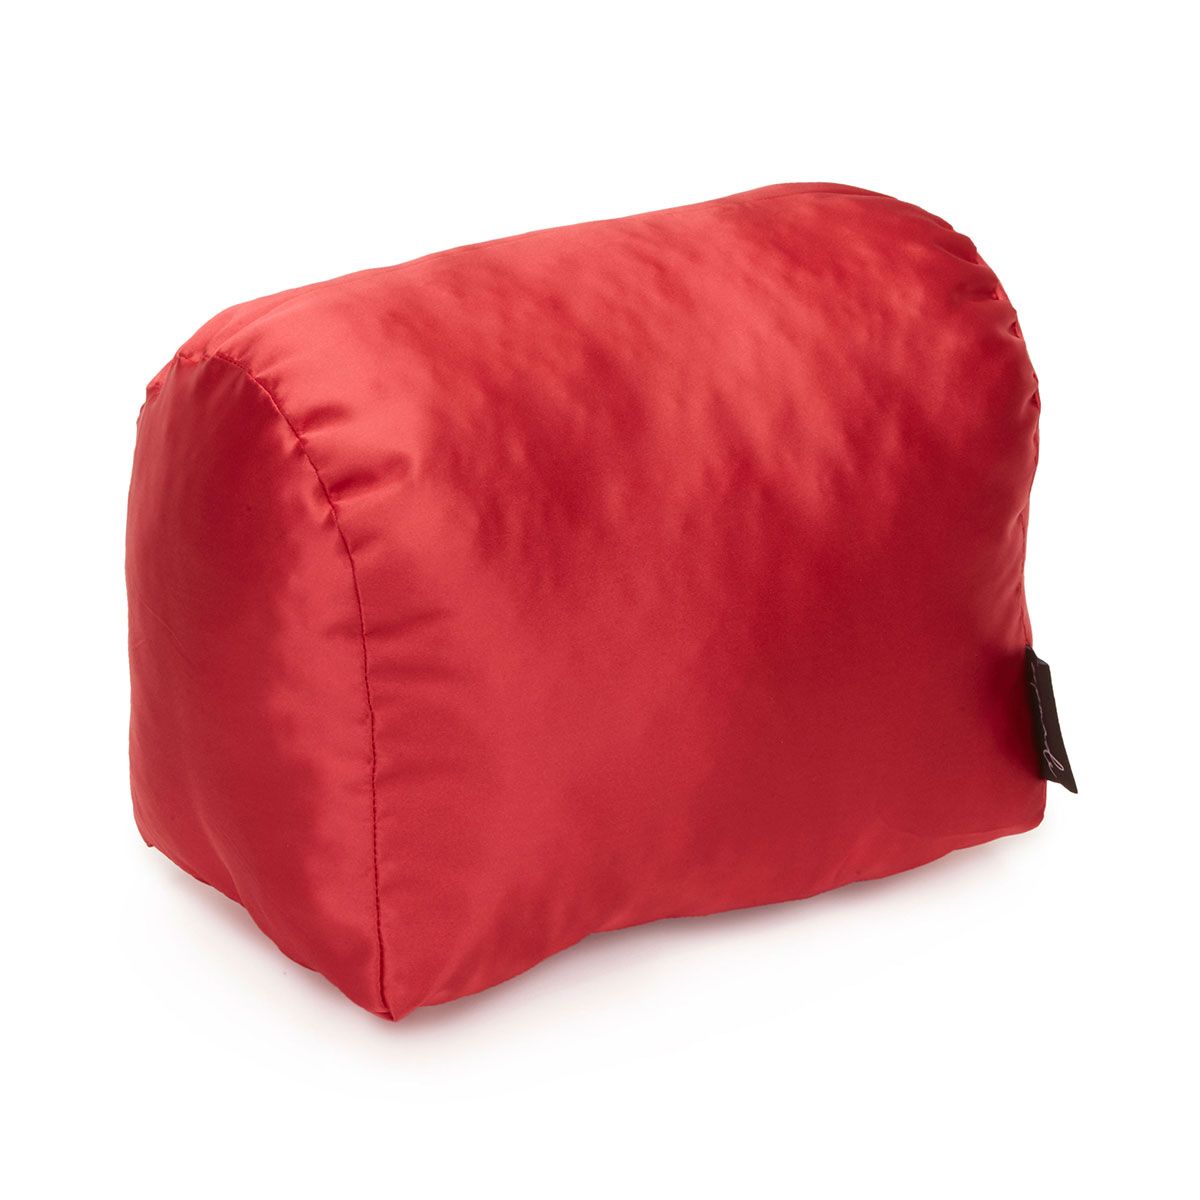 Purse Pillow for Louis Vuitton Speedy Bag Models, Bag Shaper Pillow, P -  Zepmade